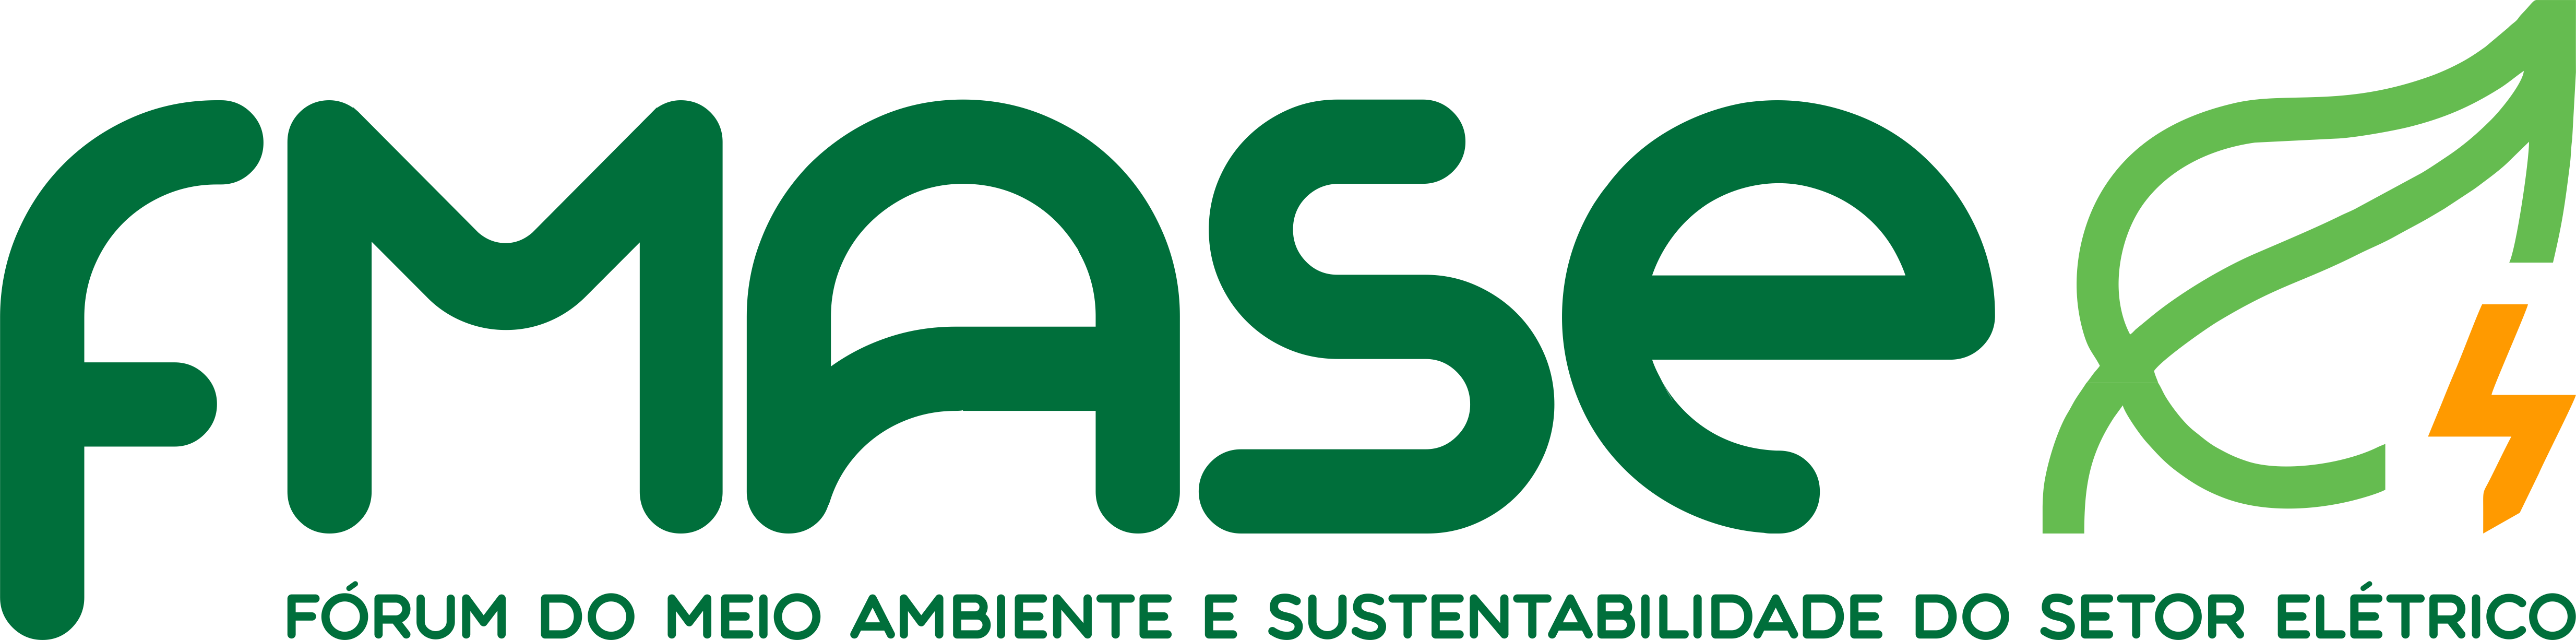 FMASE reelege Marcelo Moraes como presidente da entidade